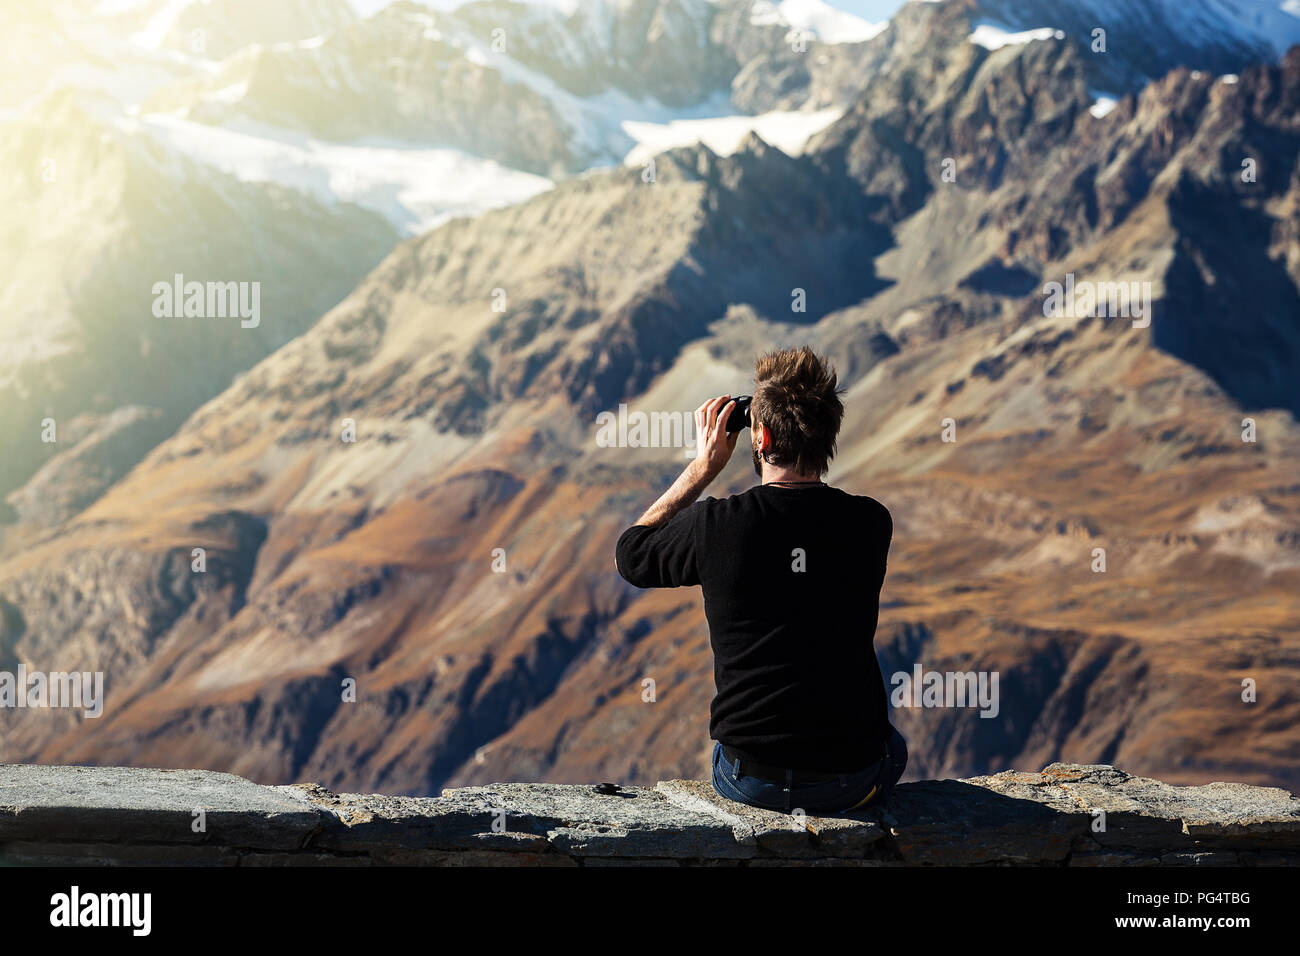 Mode touristische Mann aussehen Natur Blick auf Schnee und trockenen  Schicht von Berg durch ein Fernglas auf Sicht auf die Berge in der Schweiz  Stockfotografie - Alamy